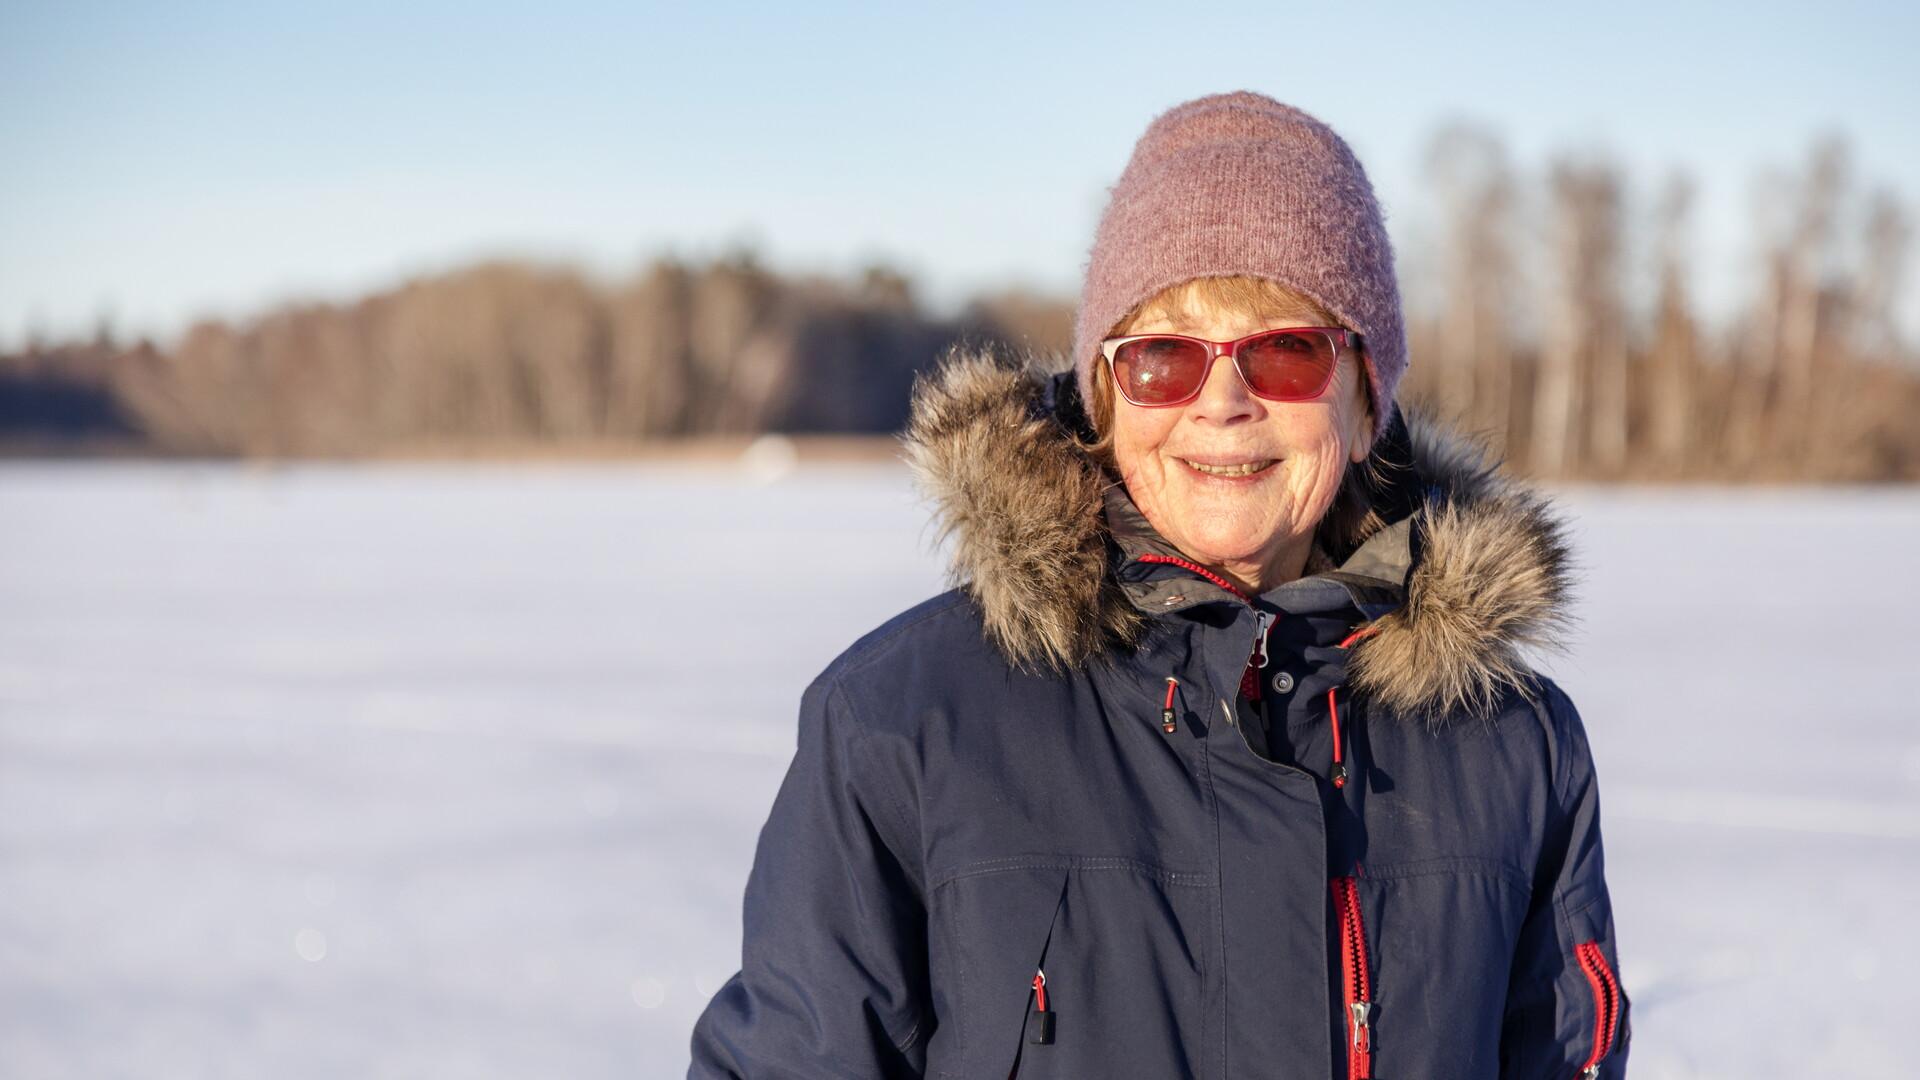 Fotografi av kvinnlig pensionär i vinterlandskap